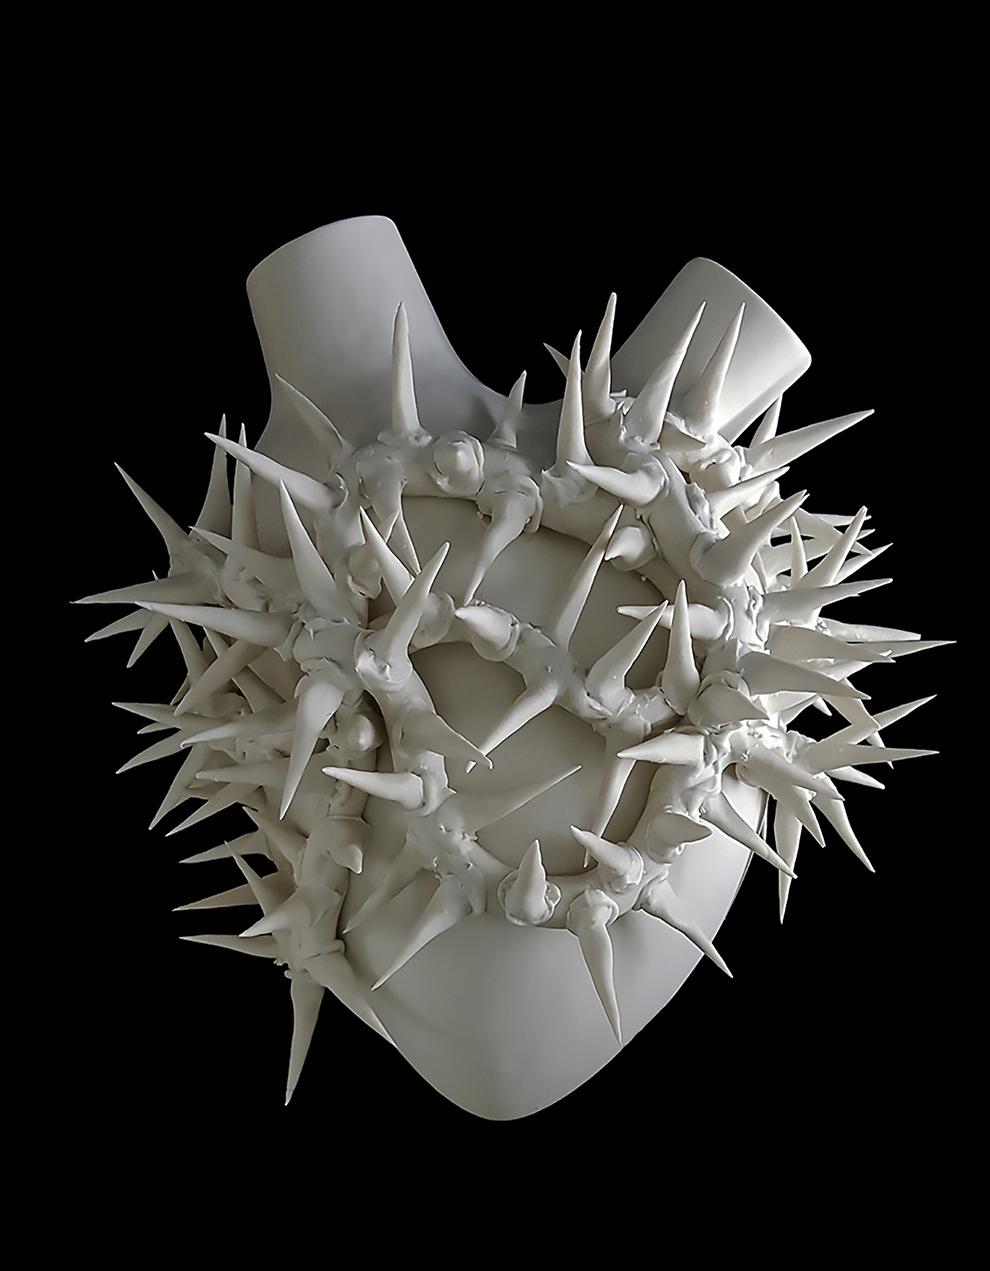 La collection Heart est le fruit de la créativité extravagante de deux designers innovants, qui s'inspirent tout particulièrement du corps humain.

Cette collection est composée de 4 magnifiques pièces toutes fabriquées à la main en Italie. Les